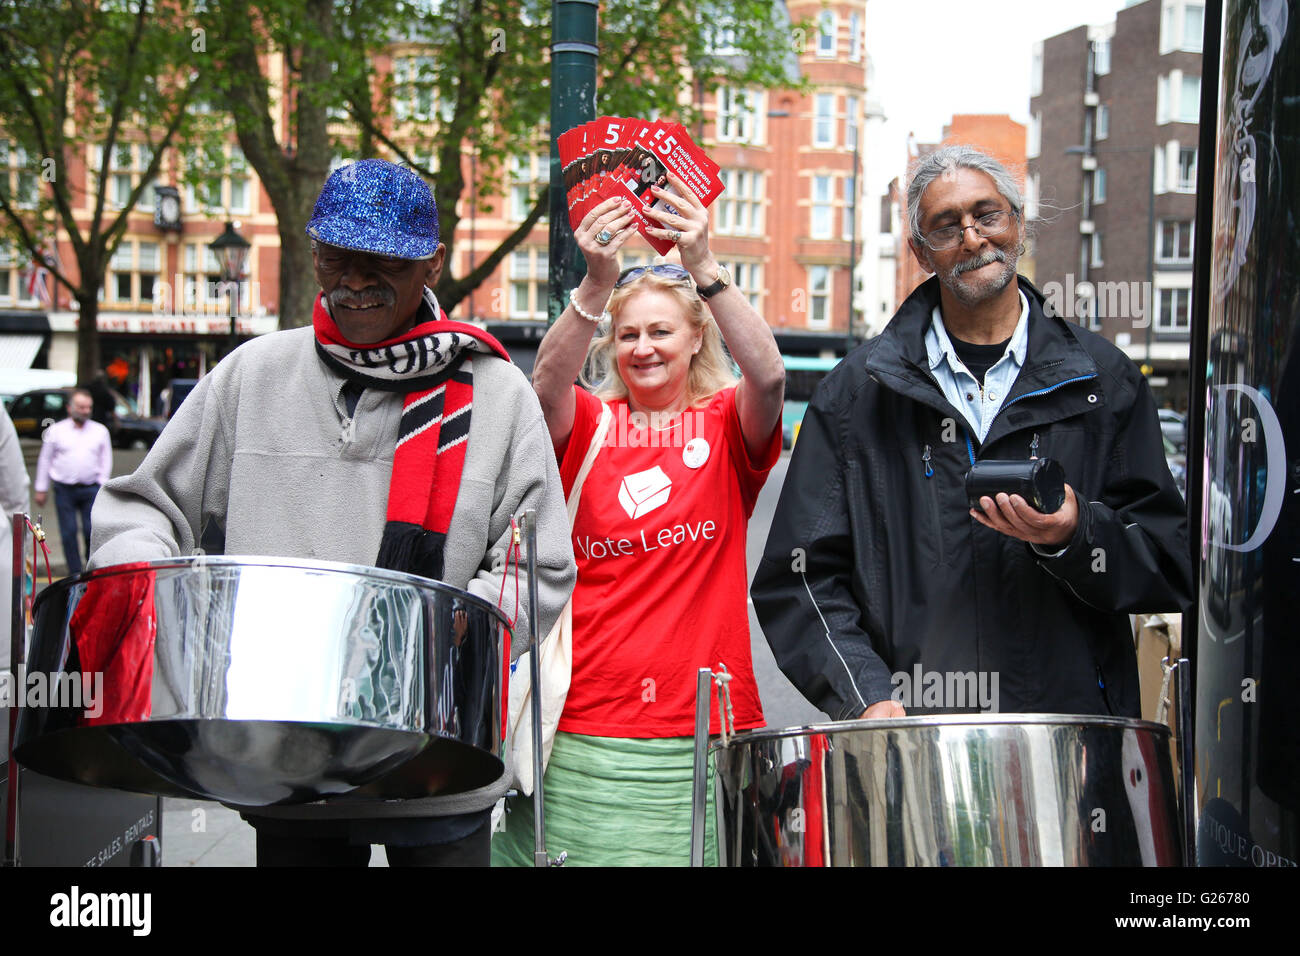 Sloane Square, London, Regno Unito 24 maggio 2016 - Votare per lasciare gli attivisti con nastro di acciaio al di fuori Sloane Square stazione della metropolitana. Credito: Dinendra Haria/Alamy Live News Foto Stock